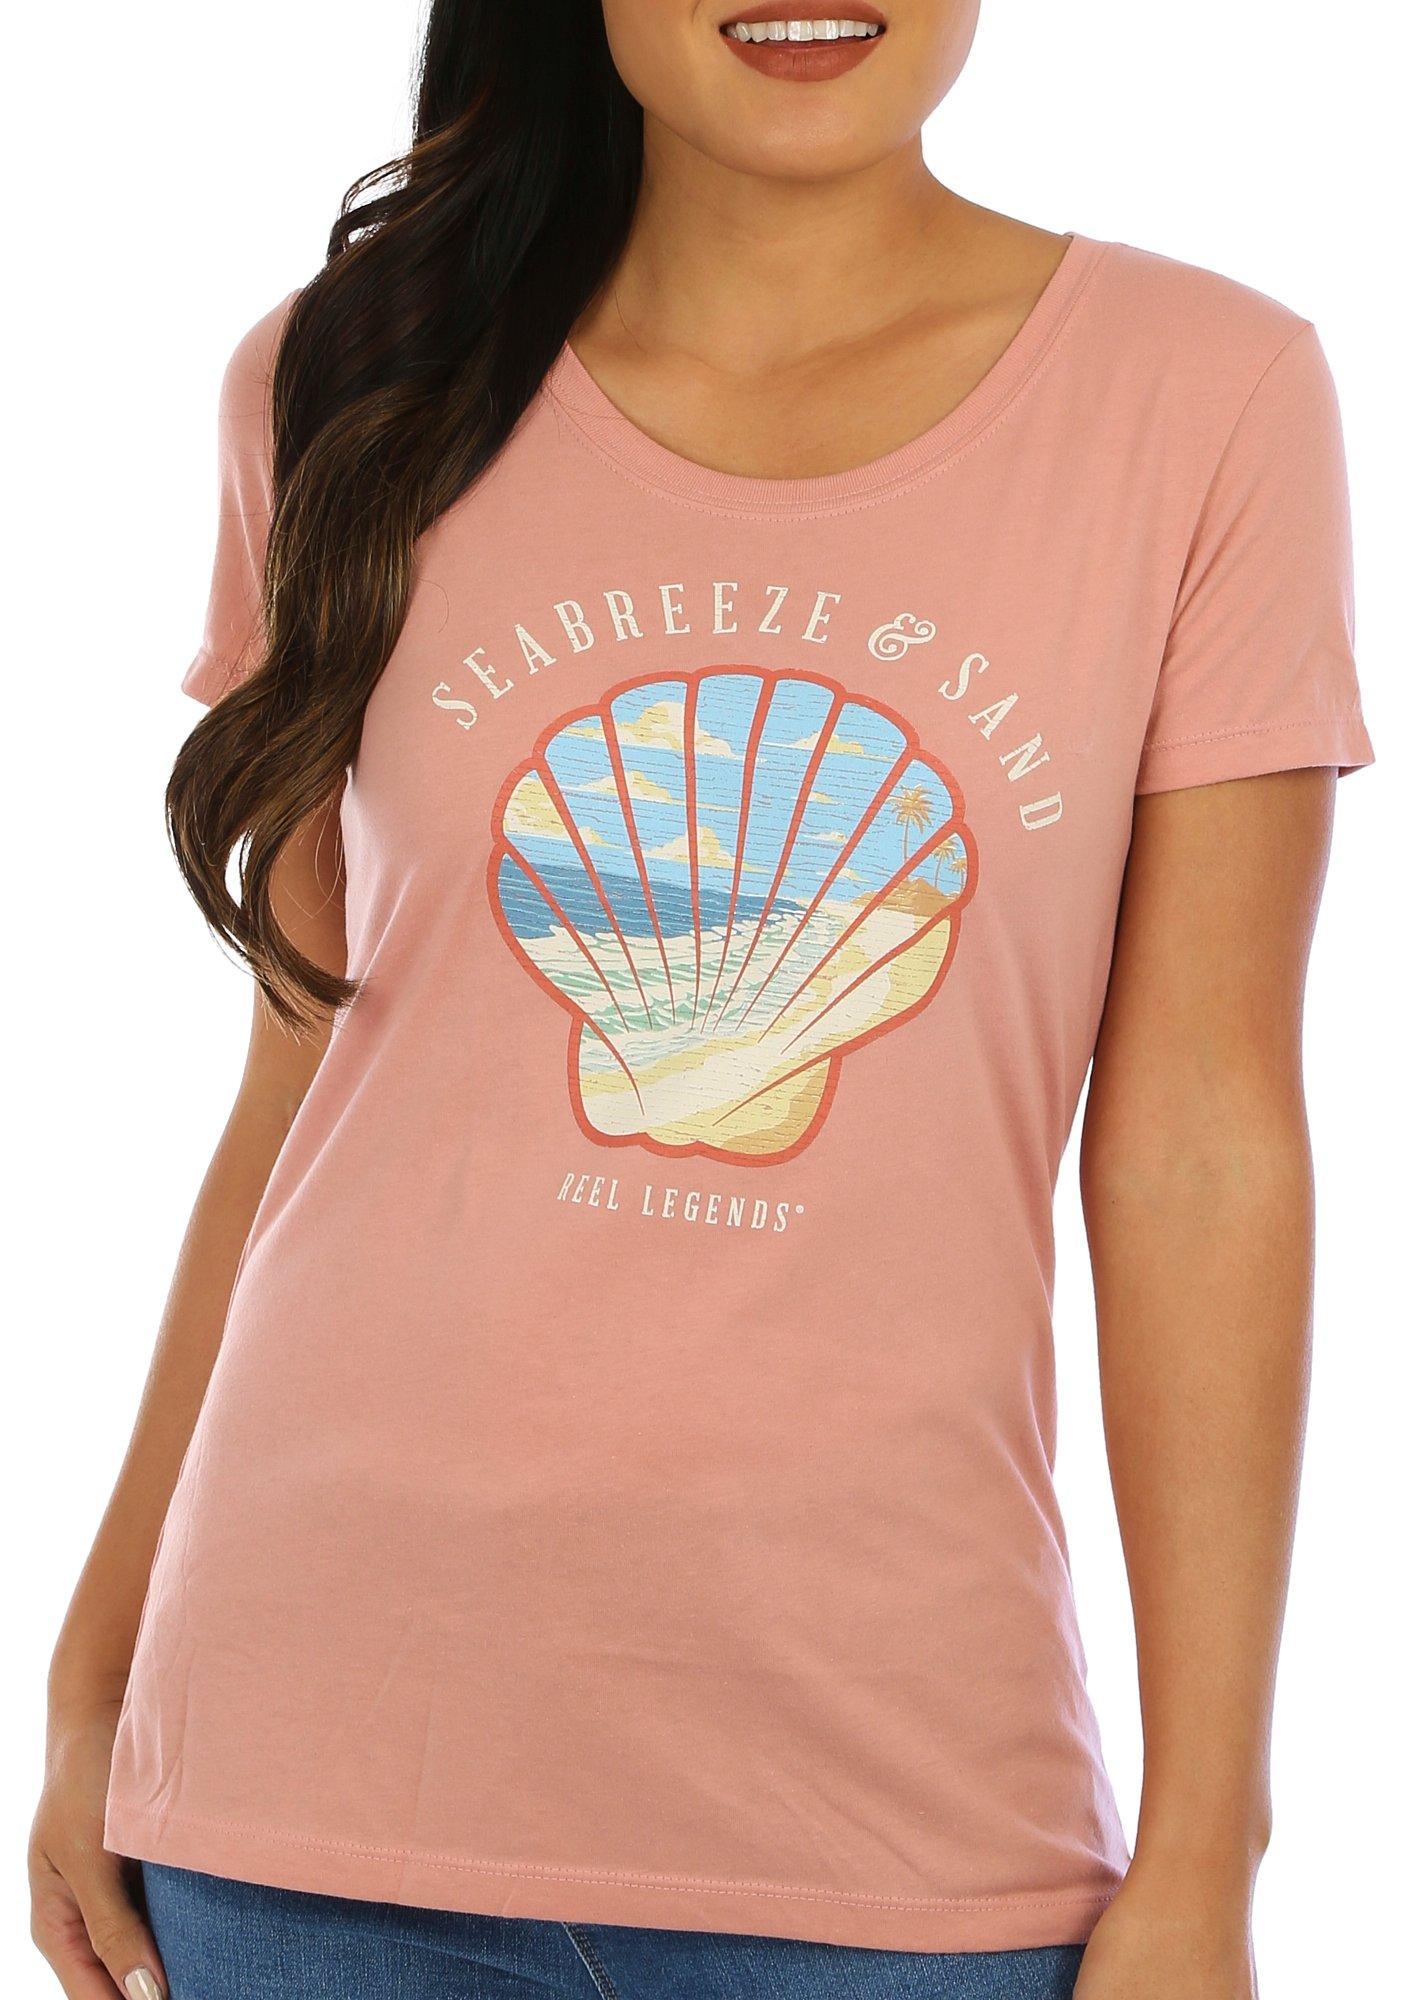 Reel Legends Womens Seabreeze & Sand Short Sleeve T-Shirt